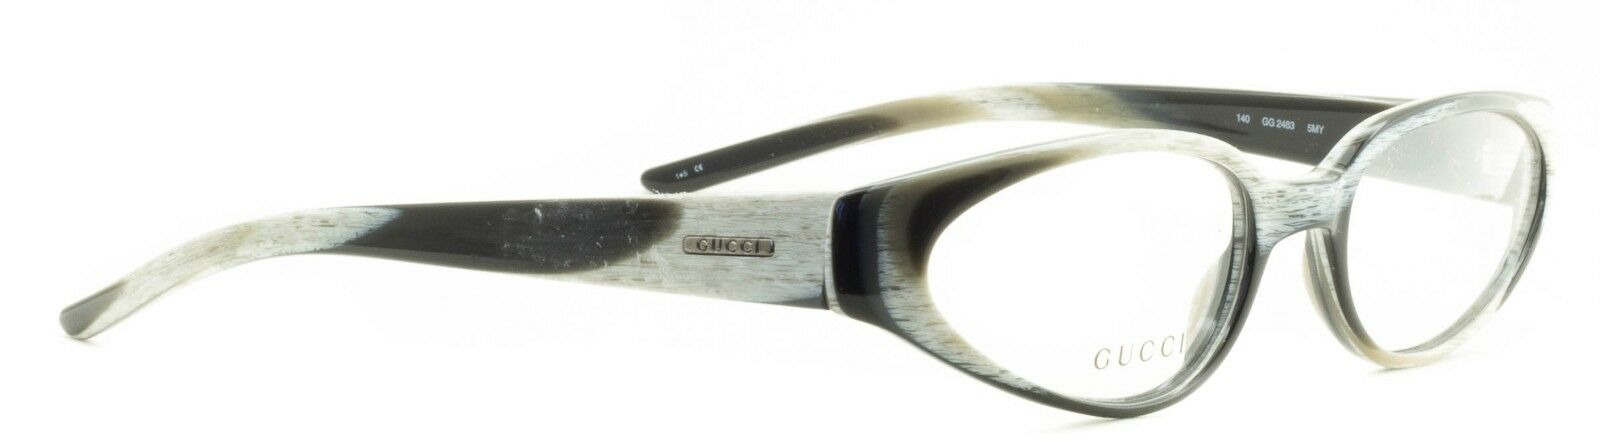 GUCCI GG 2483 5MY Eyewear FRAMES NEW Glasses RX Optical Eyeglasses ITALY - BNIB